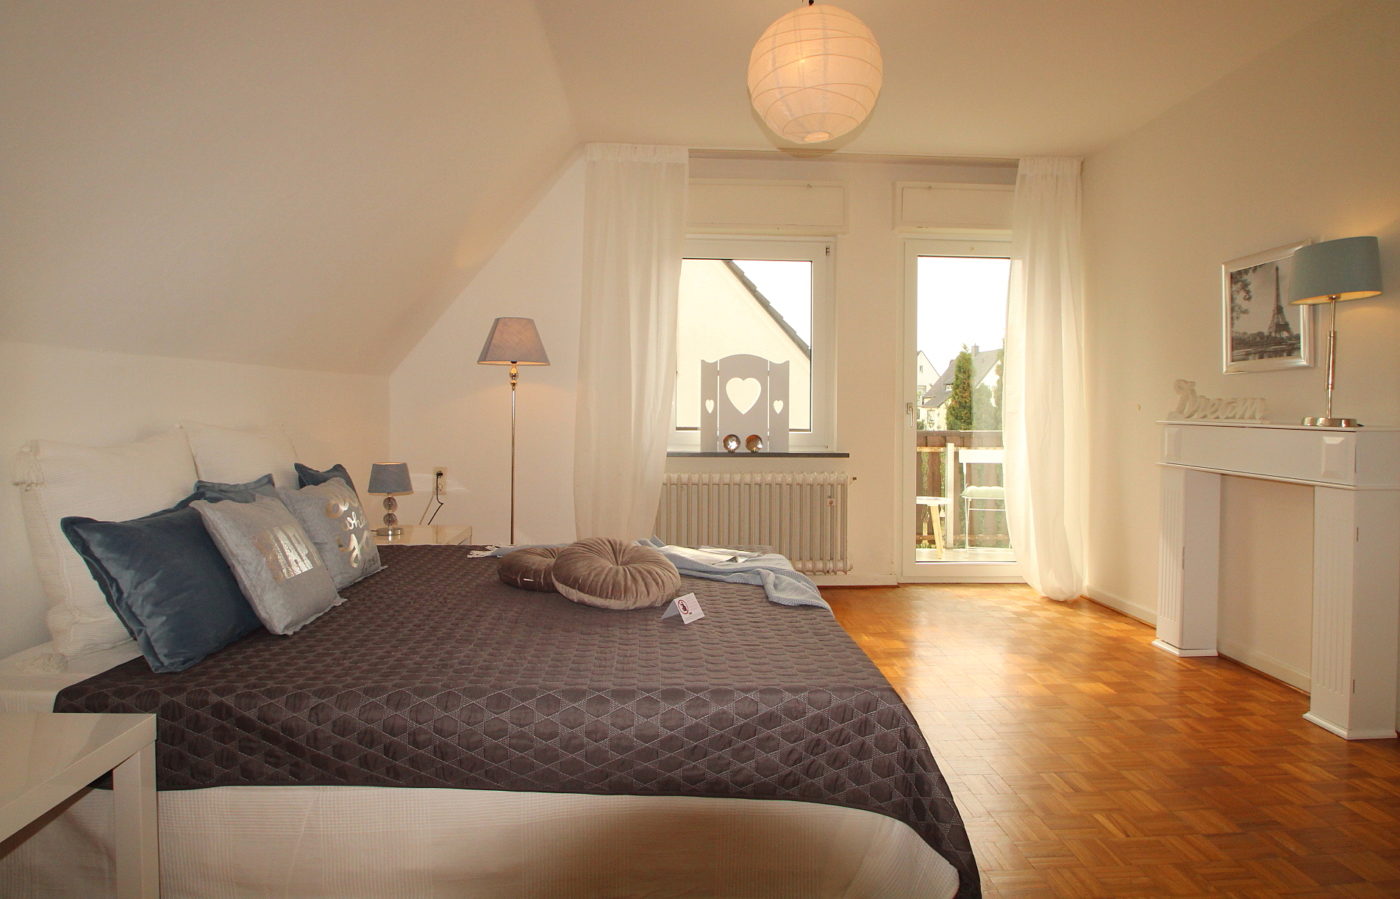 Schlafzimmer nach dem Homestaging durch Nicole Biernath von Blickfang Homestaging in Soest